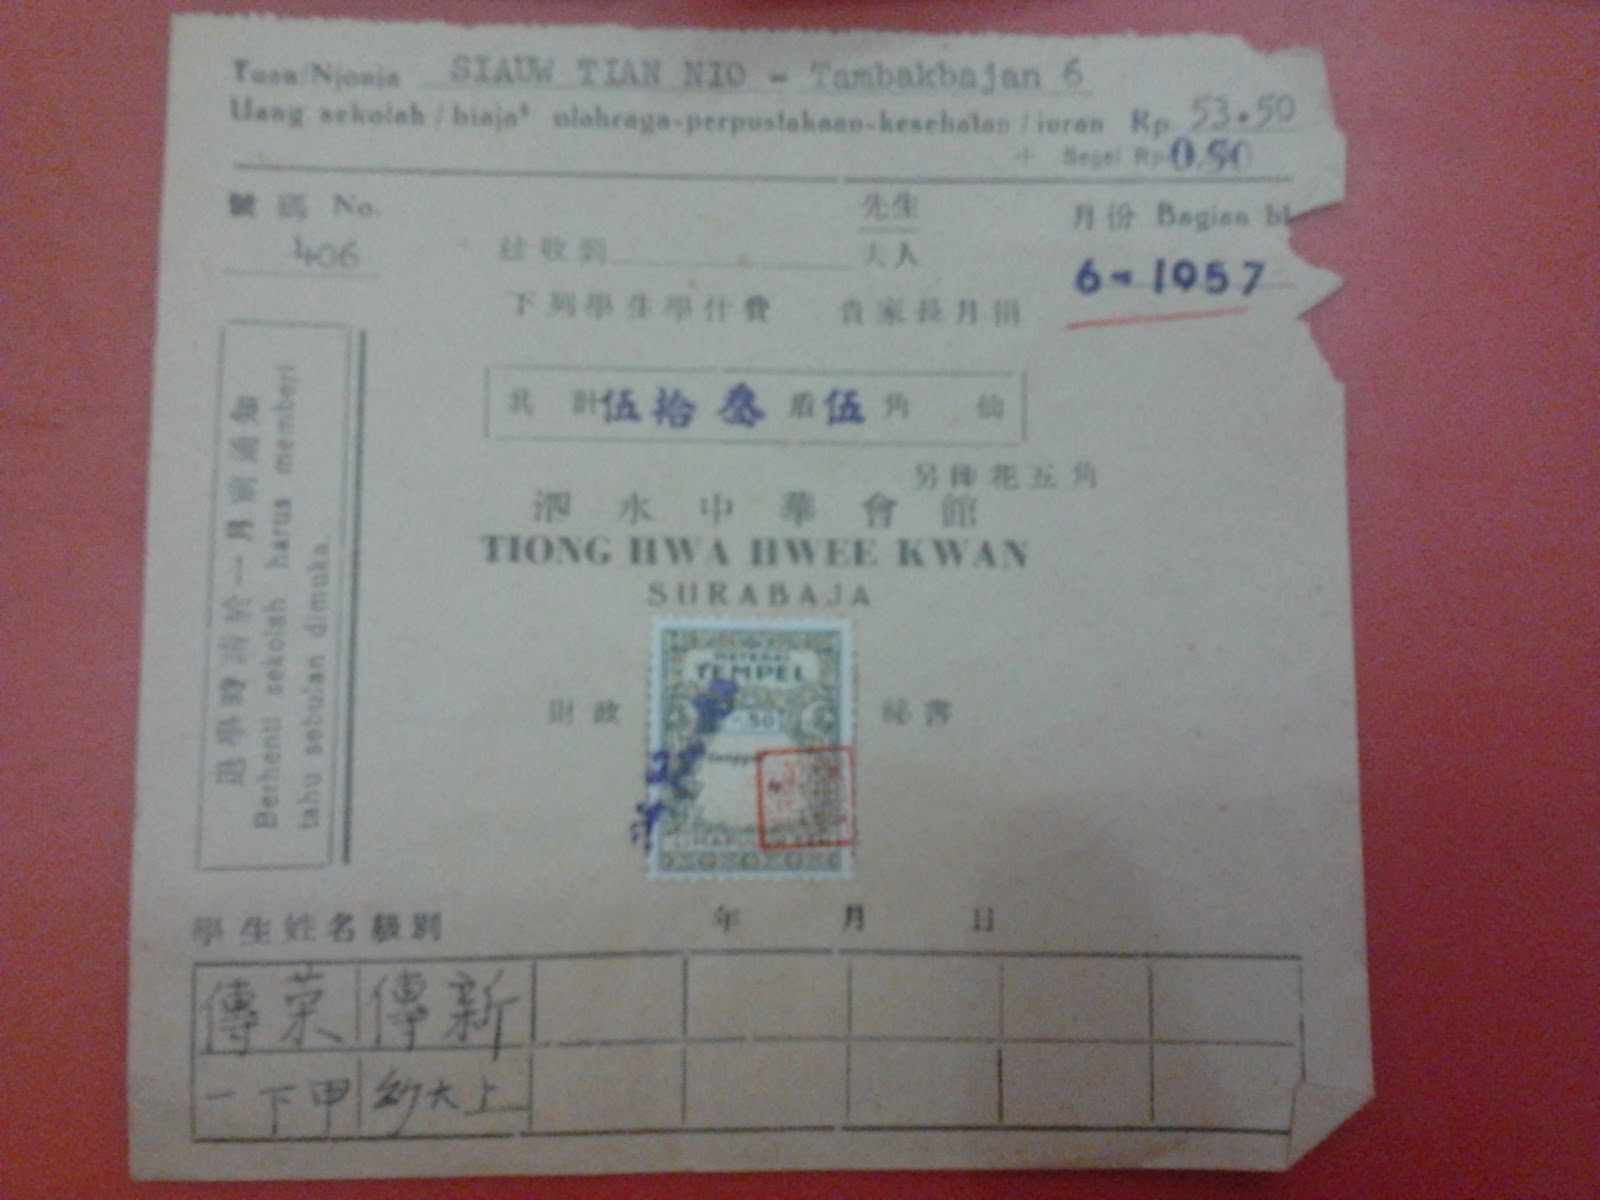 Kitiran iuran perkumpulan Tiong Hwa Kwee Kwan 1957